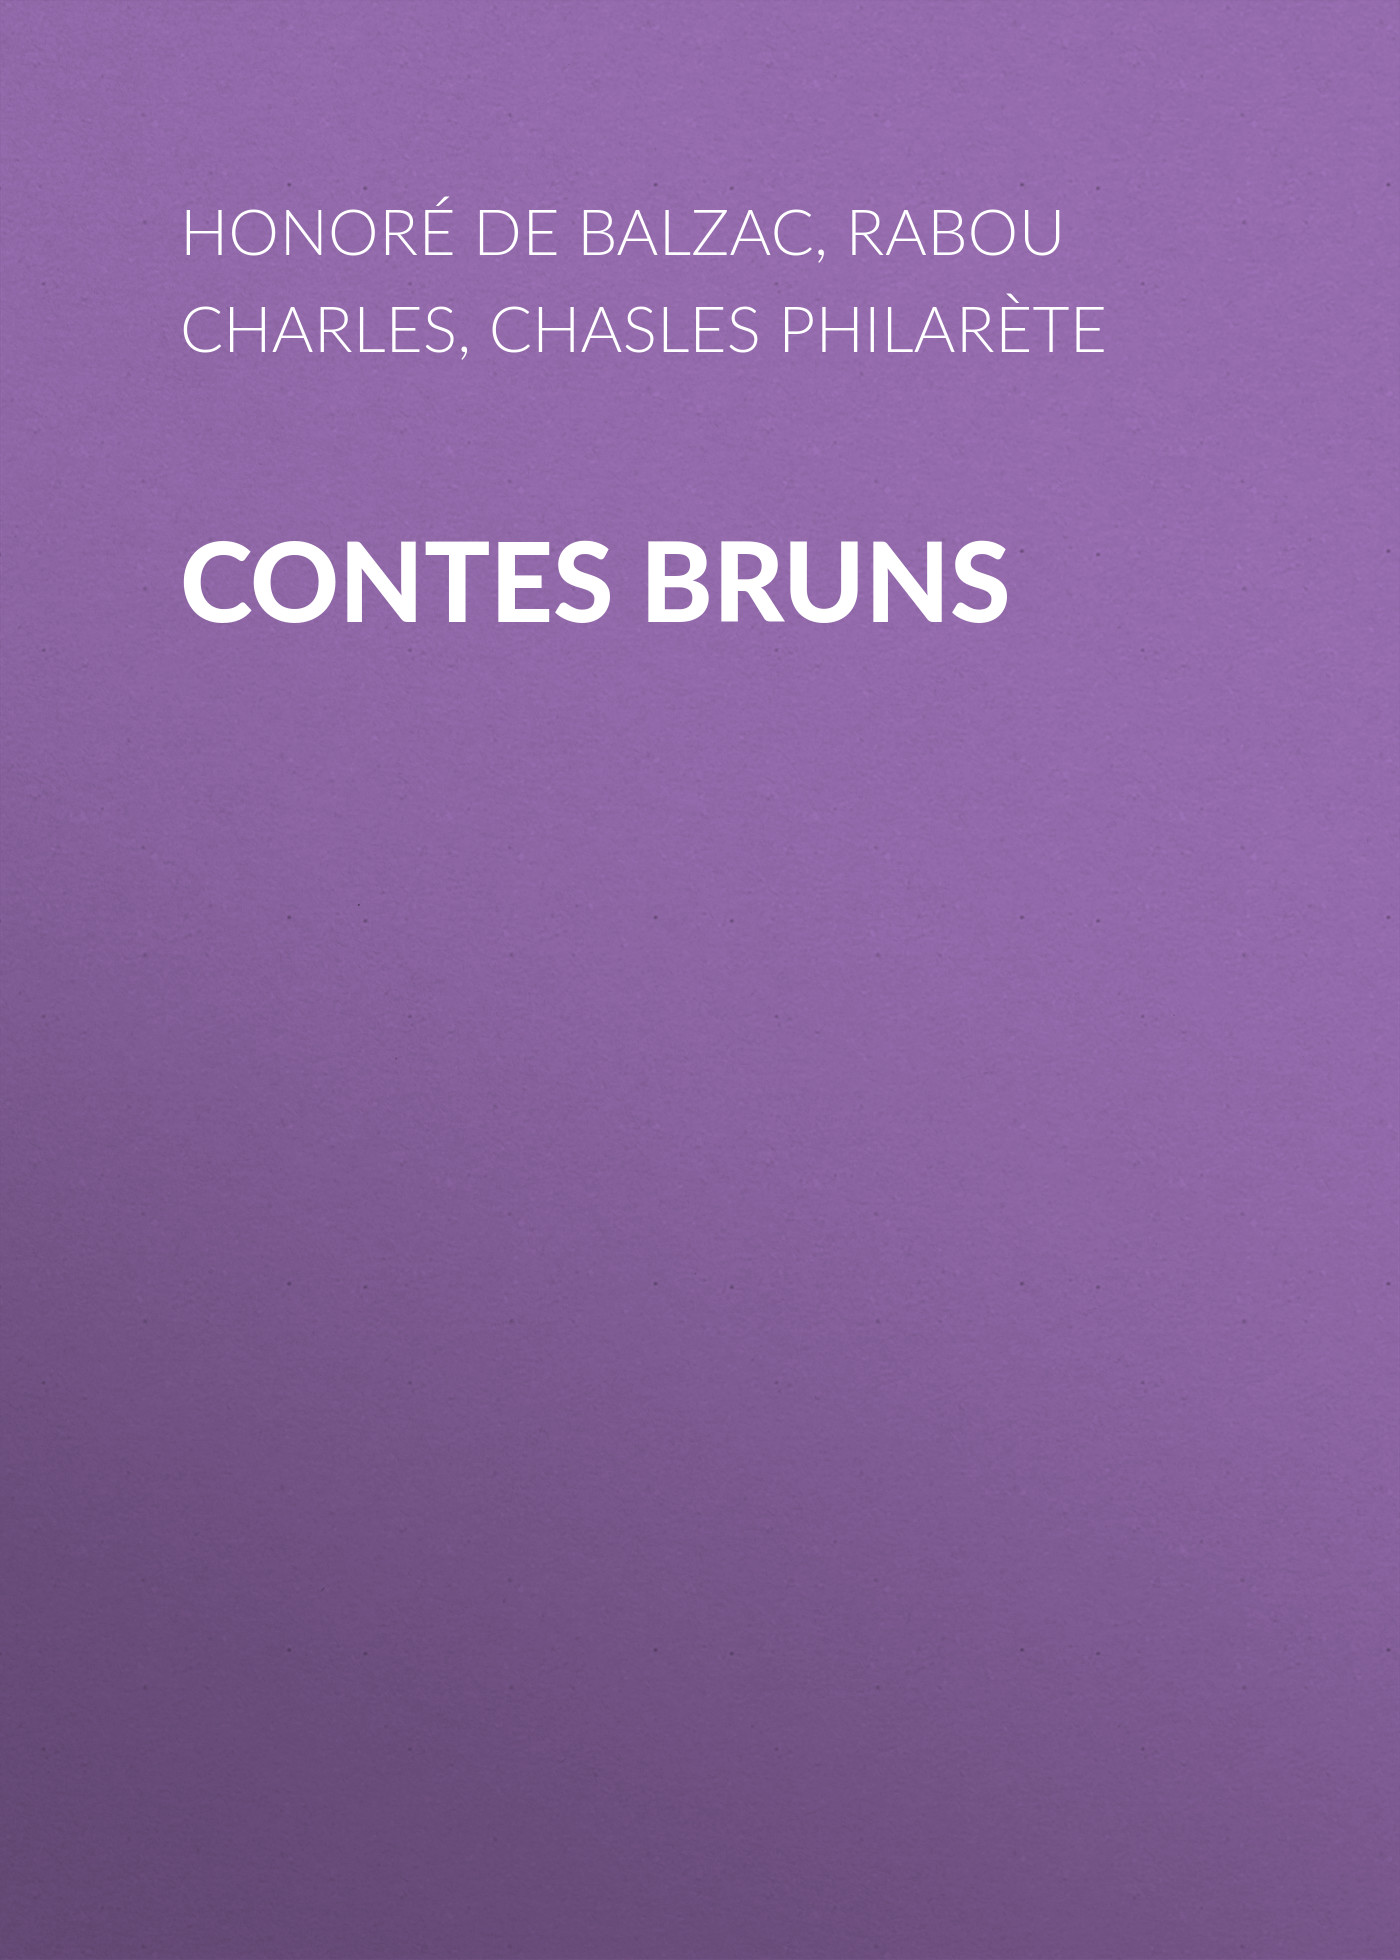 Книга Contes bruns из серии , созданная Honoré Balzac, Philarète Chasles, Charles Rabou, может относится к жанру Литература 19 века, Зарубежная старинная литература, Зарубежная классика. Стоимость электронной книги Contes bruns с идентификатором 25021203 составляет 0 руб.